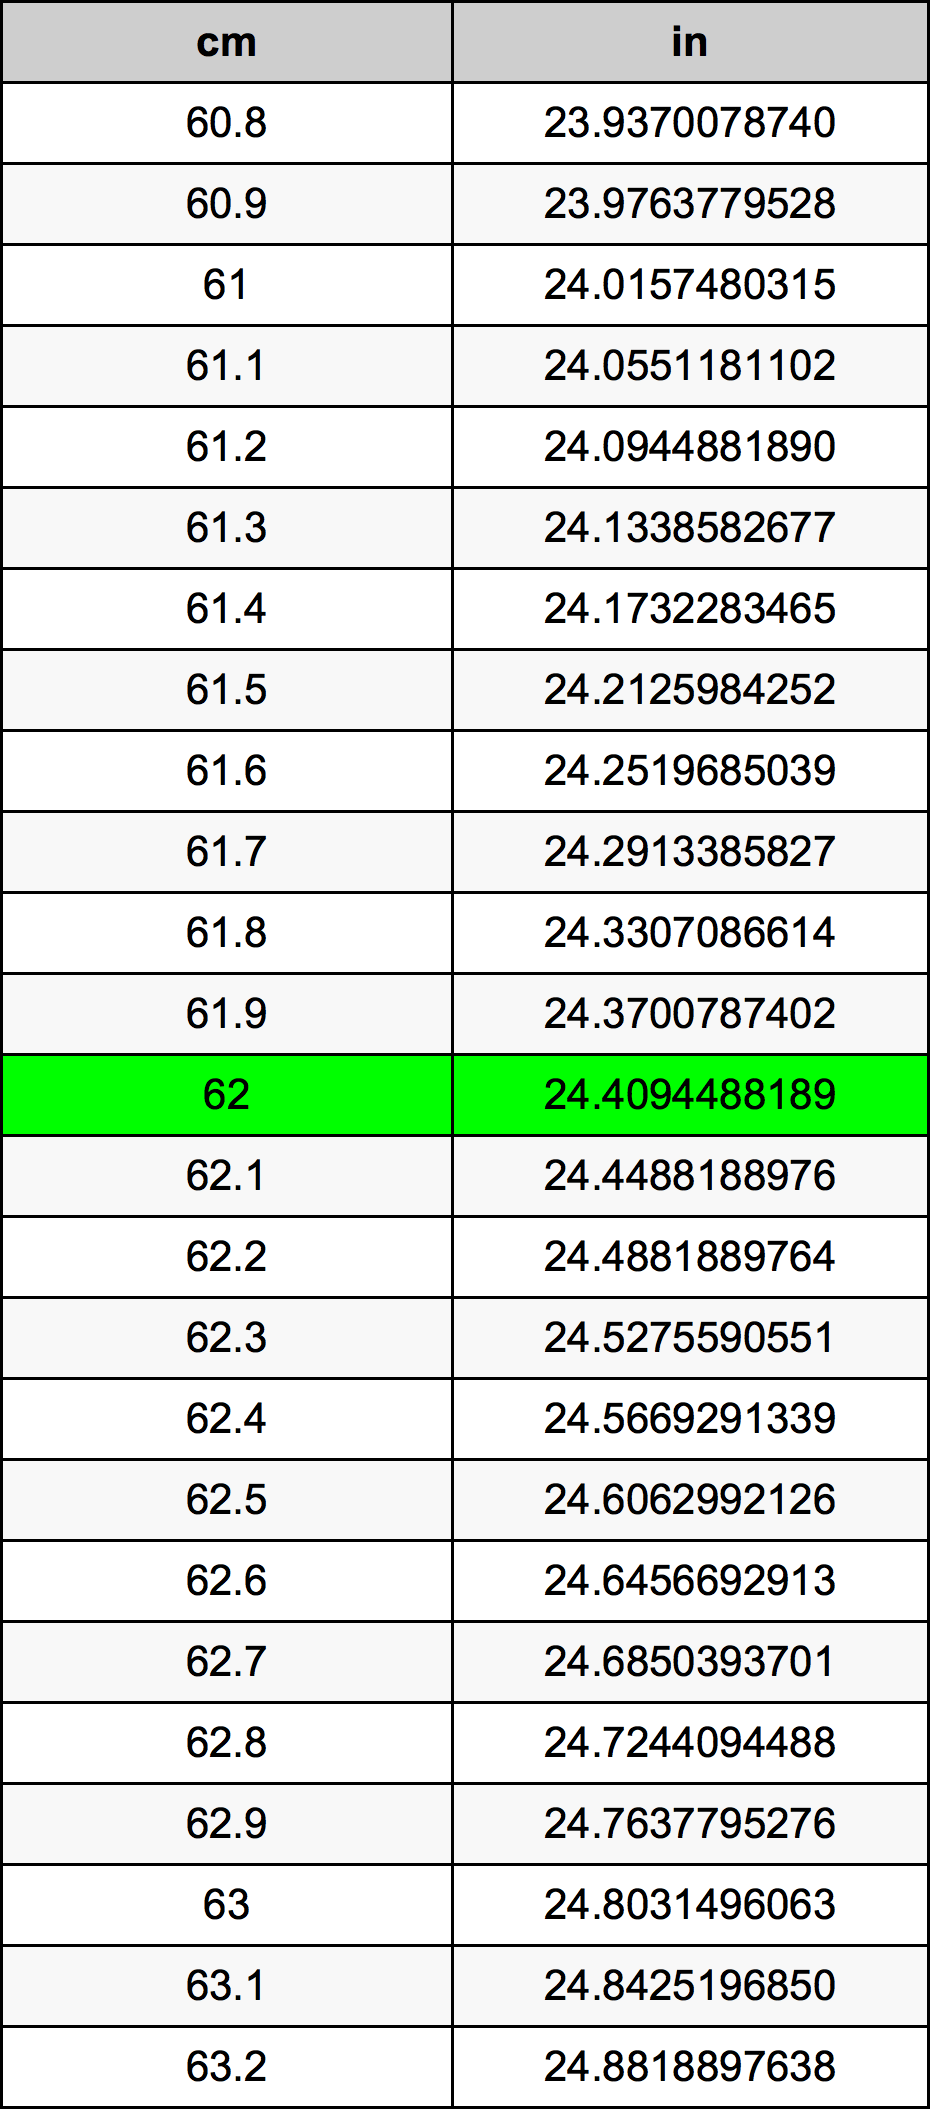 62 Centiméter átszámítási táblázat